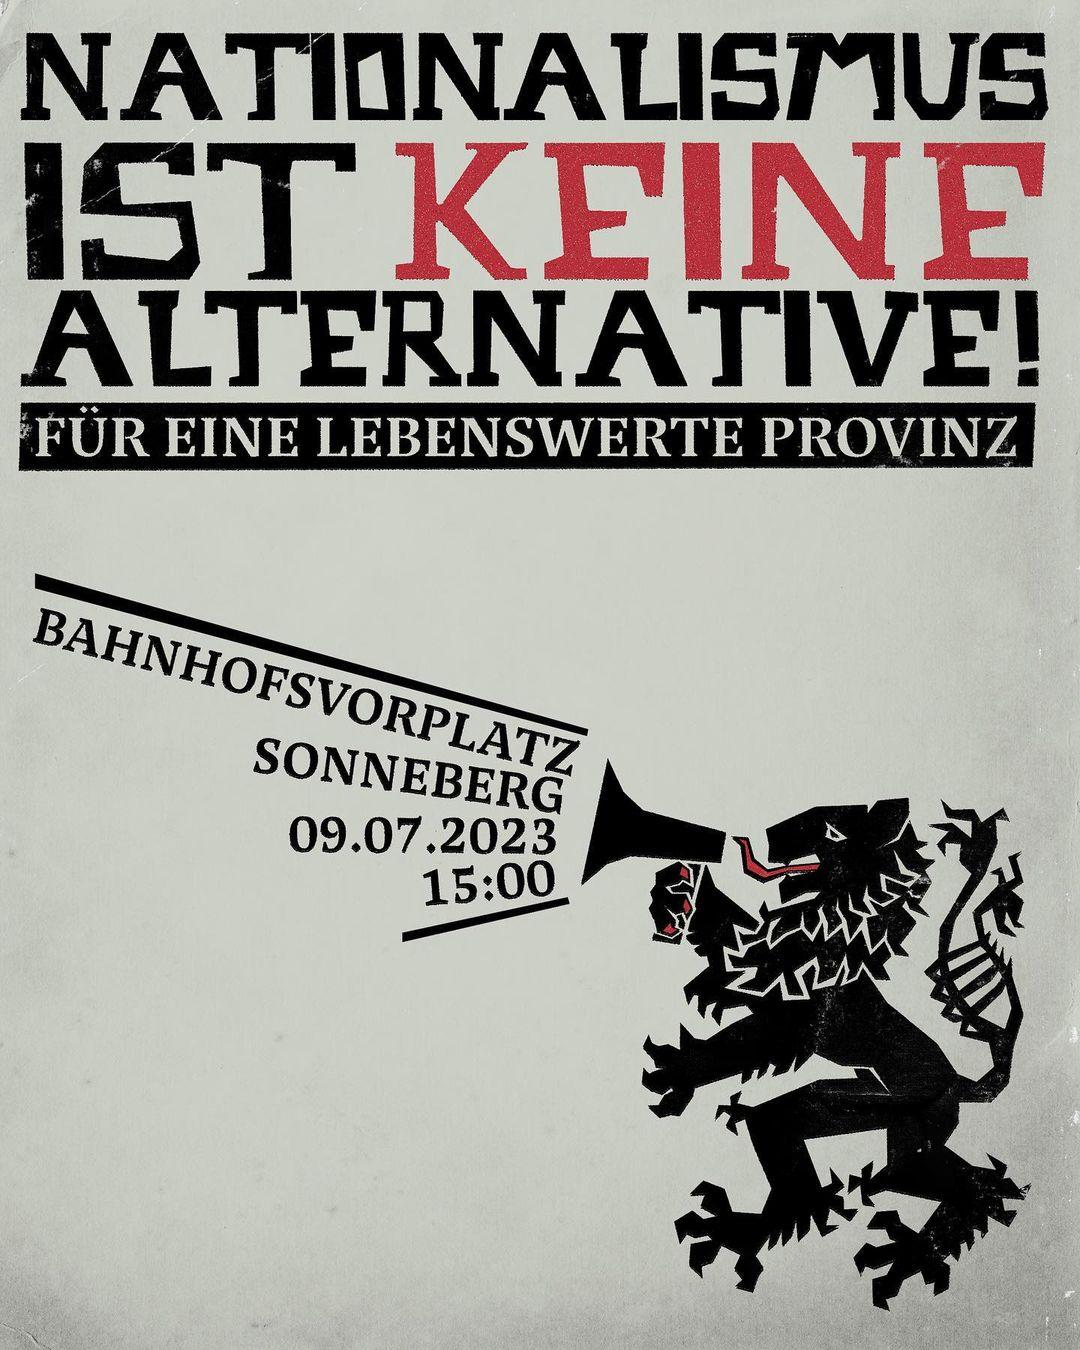 Demo in Sonneberg: "Nationalismus ist keine Alternative – Für eine lebenswerte Provinz"